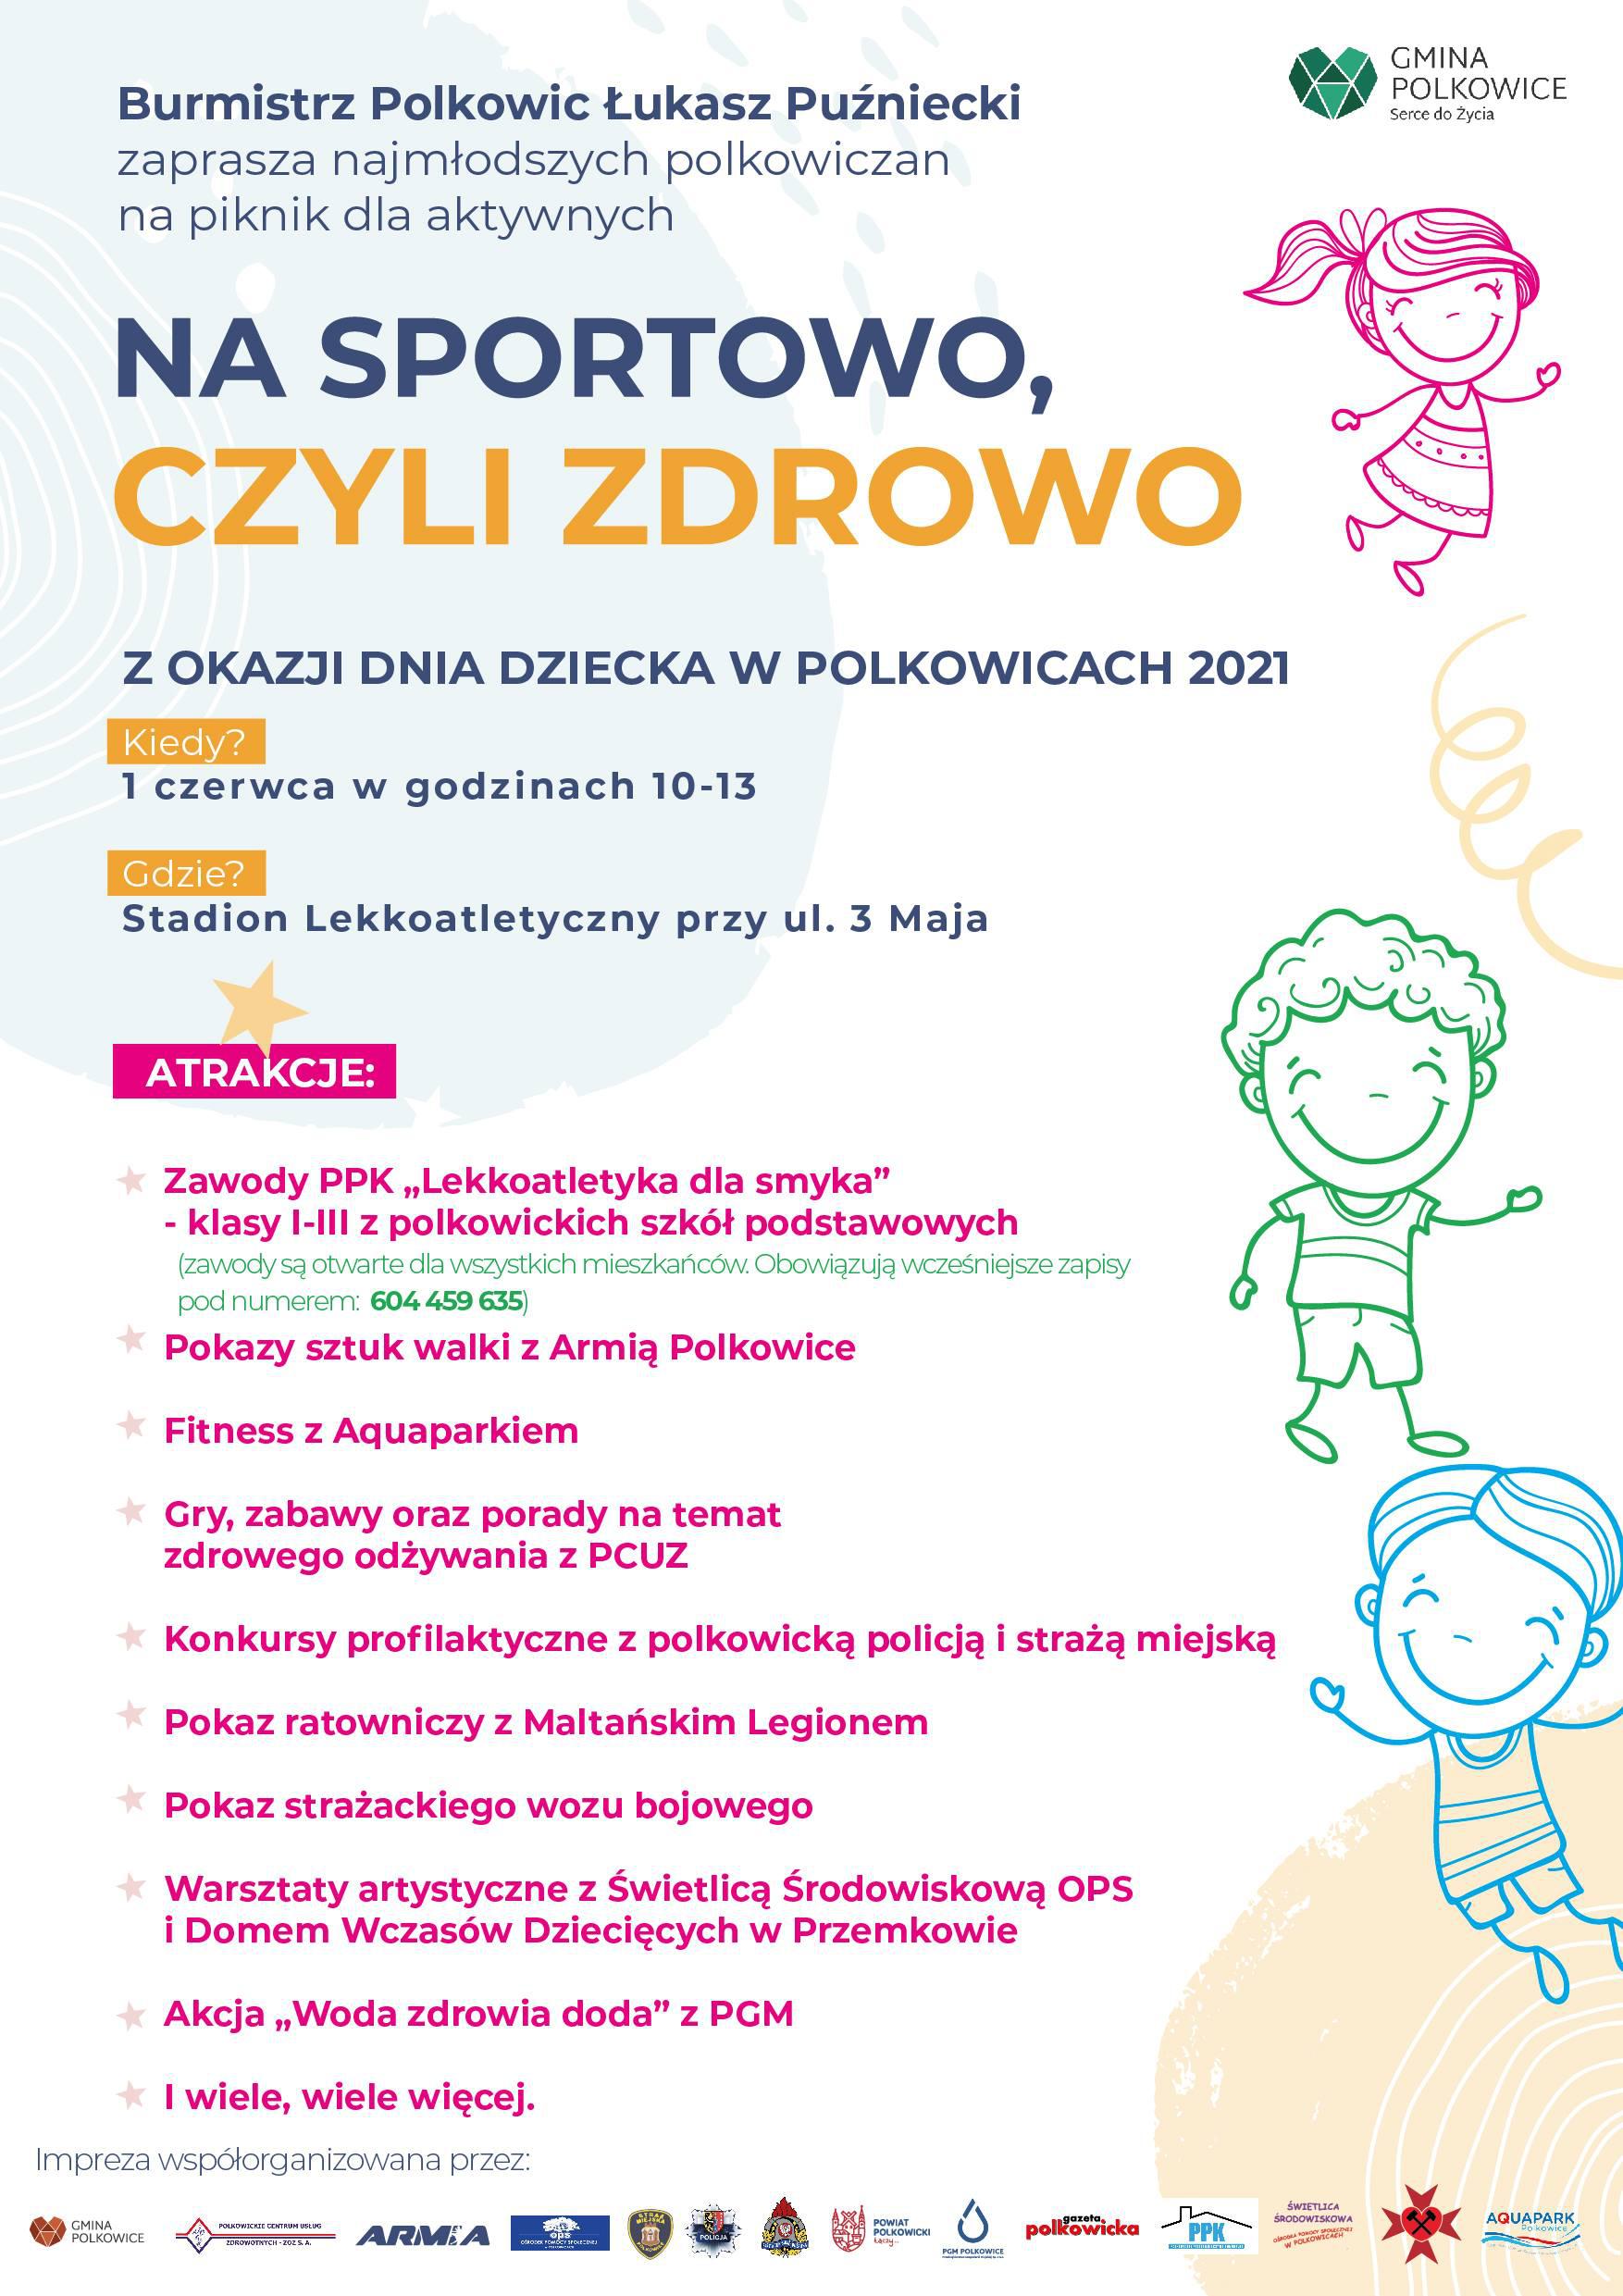 Będzie aktywny Dzień Dziecka w Polkowicach